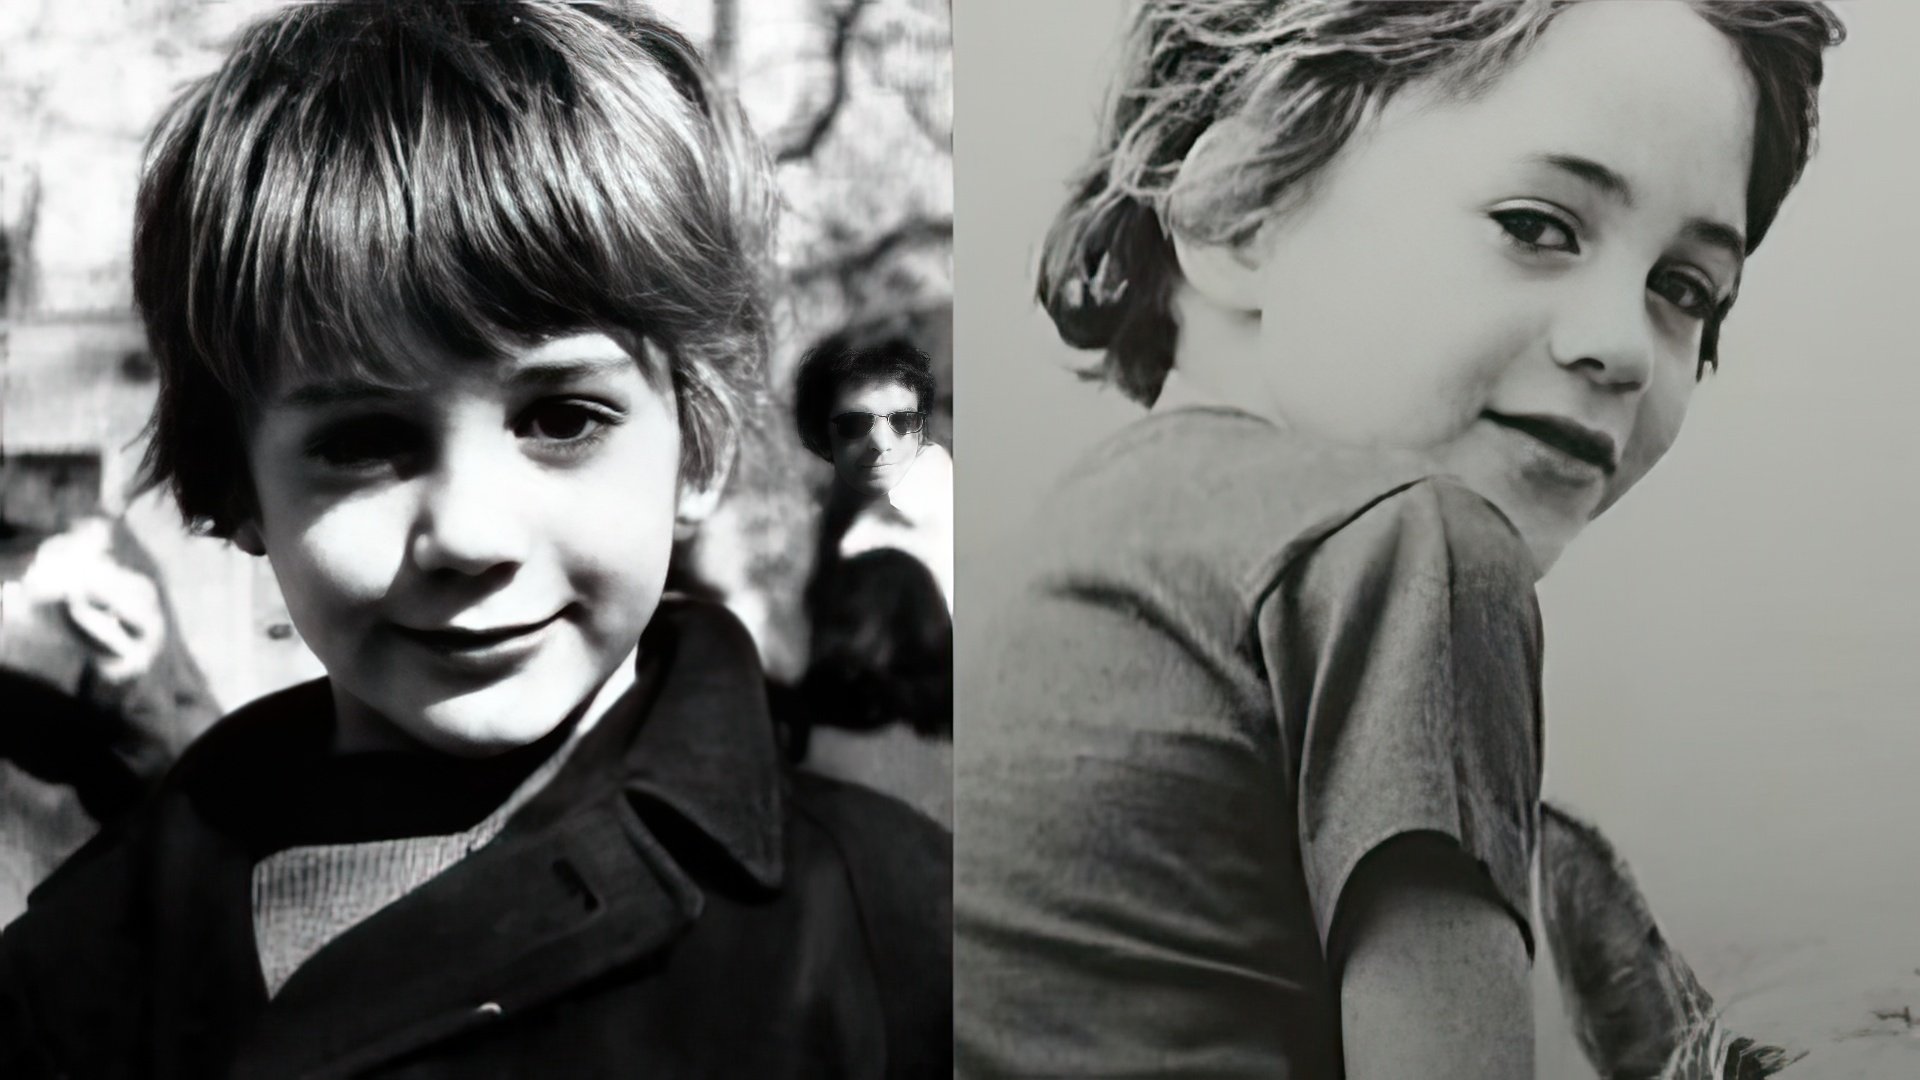 Robert Downey Jr. as a child